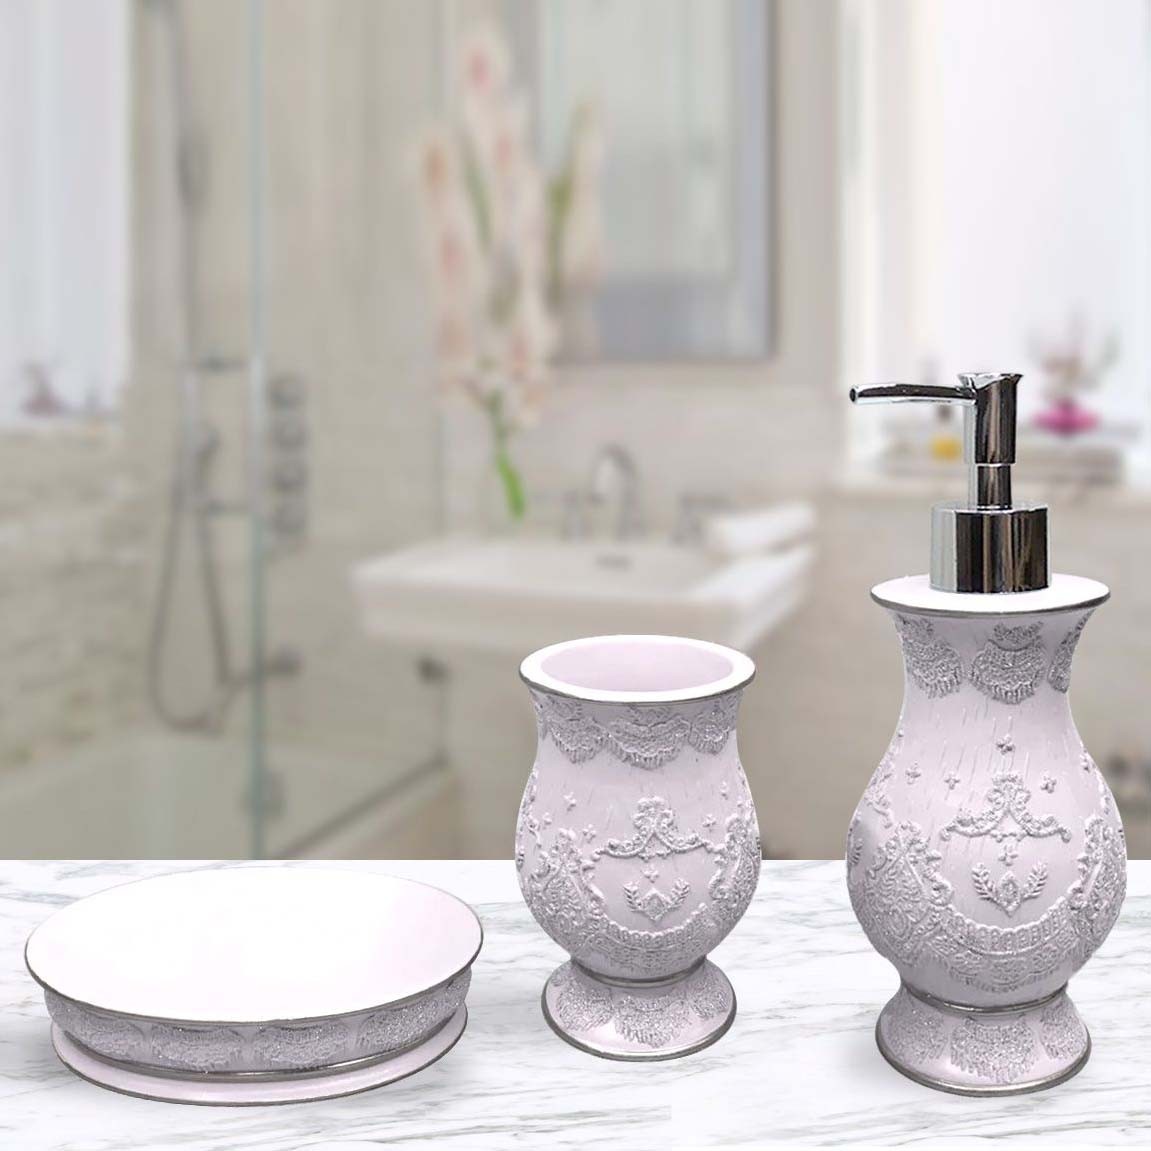 Набор для ванной Coriander цвет: пудровый (Универсальный), размер Универсальный sofi790295 Набор для ванной Coriander цвет: пудровый (Универсальный) - фото 1